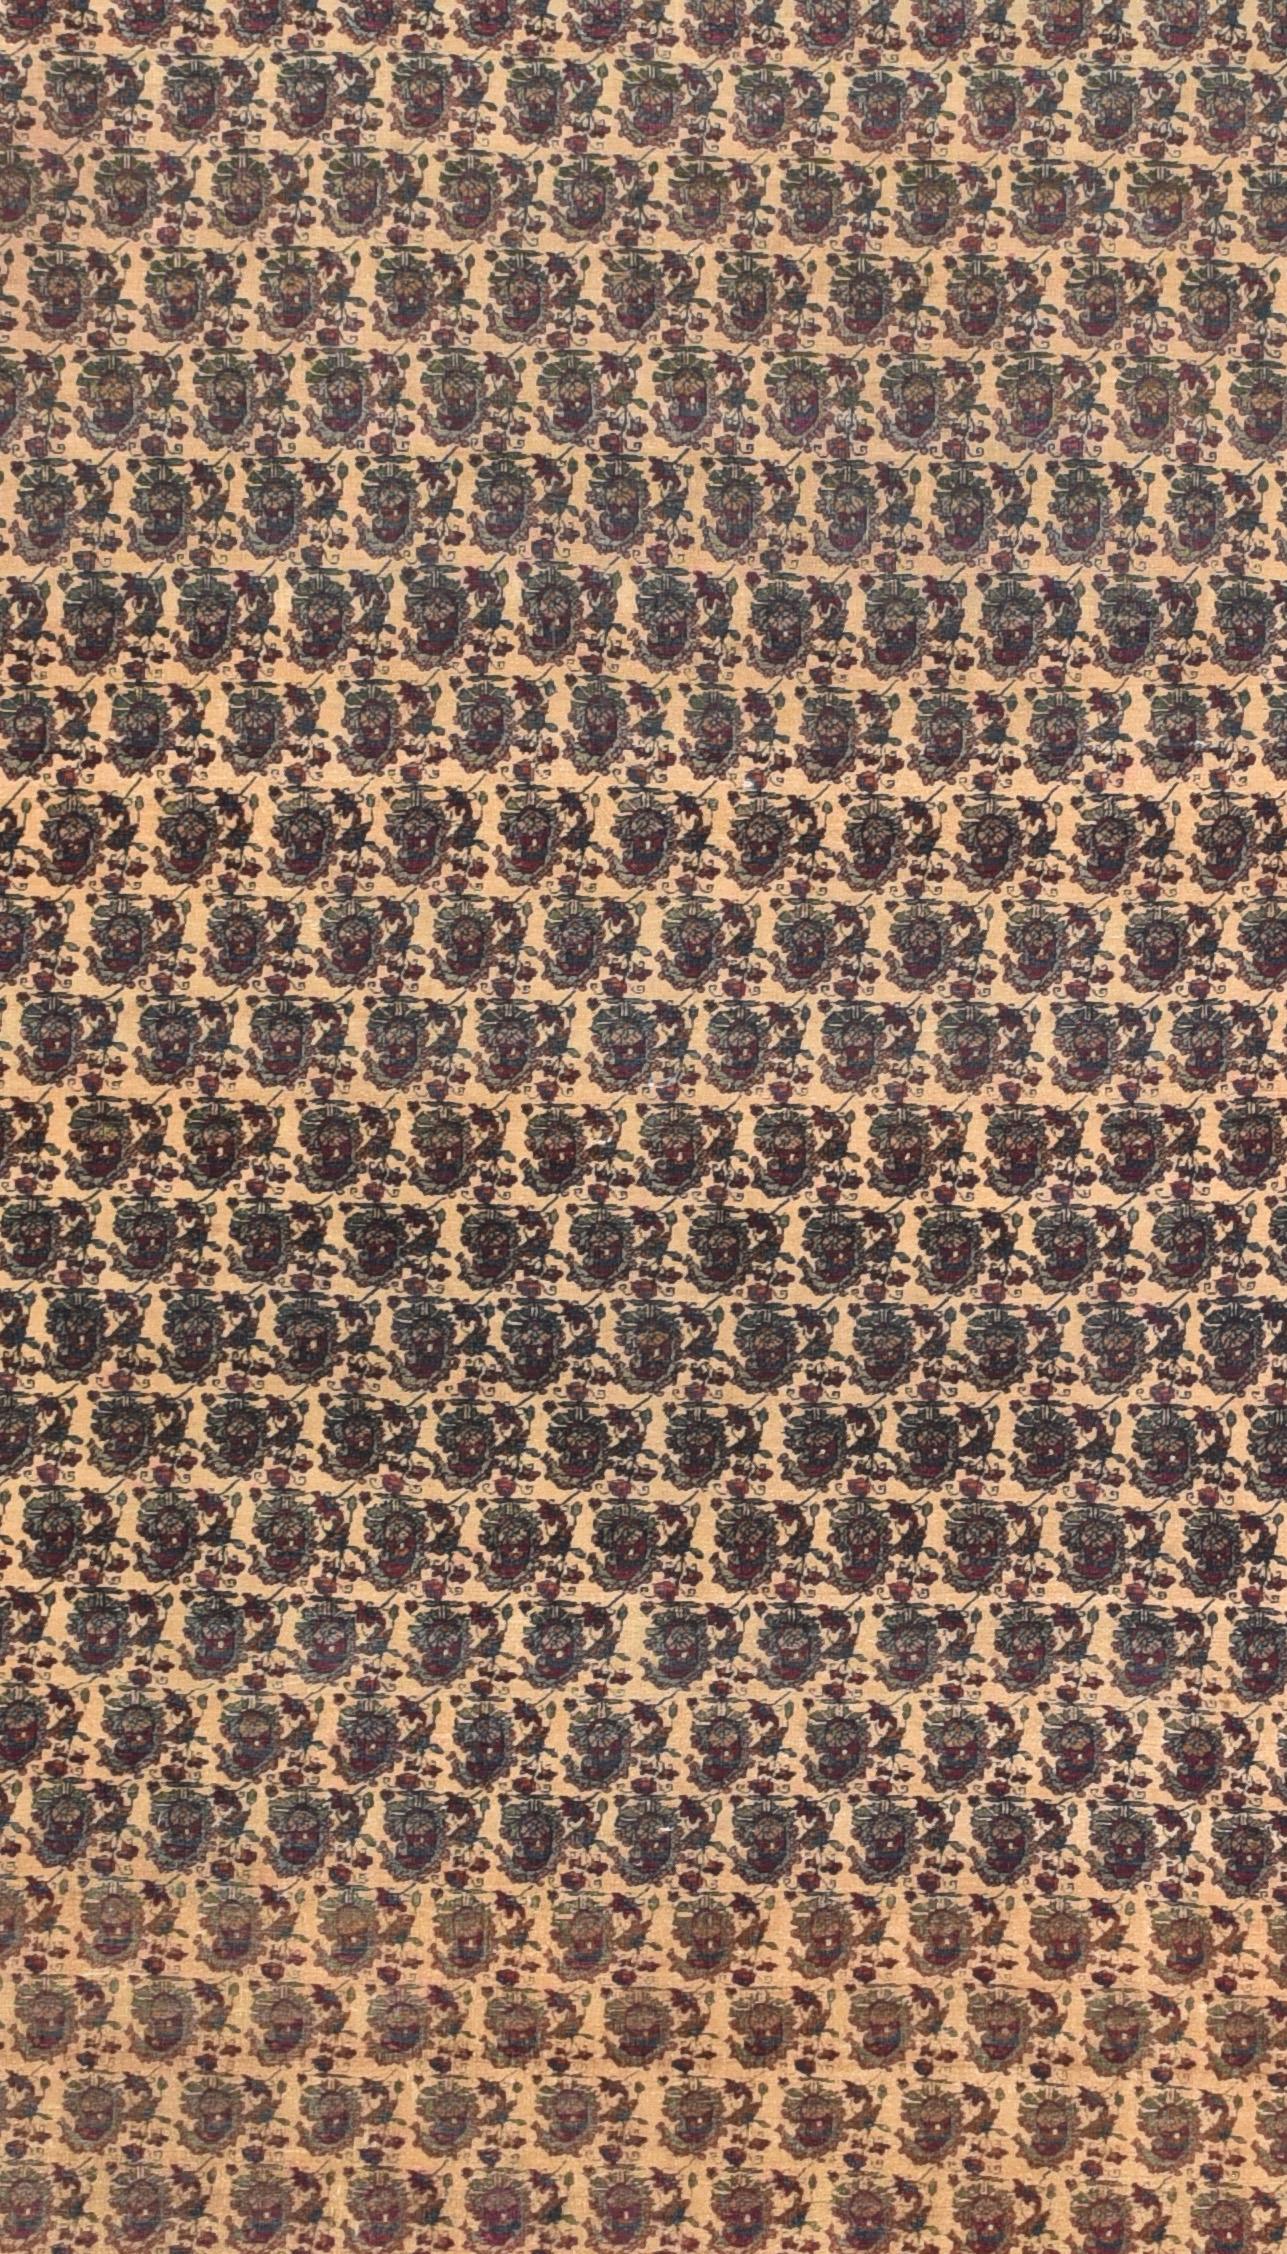 Kerman carpets (sometimes 